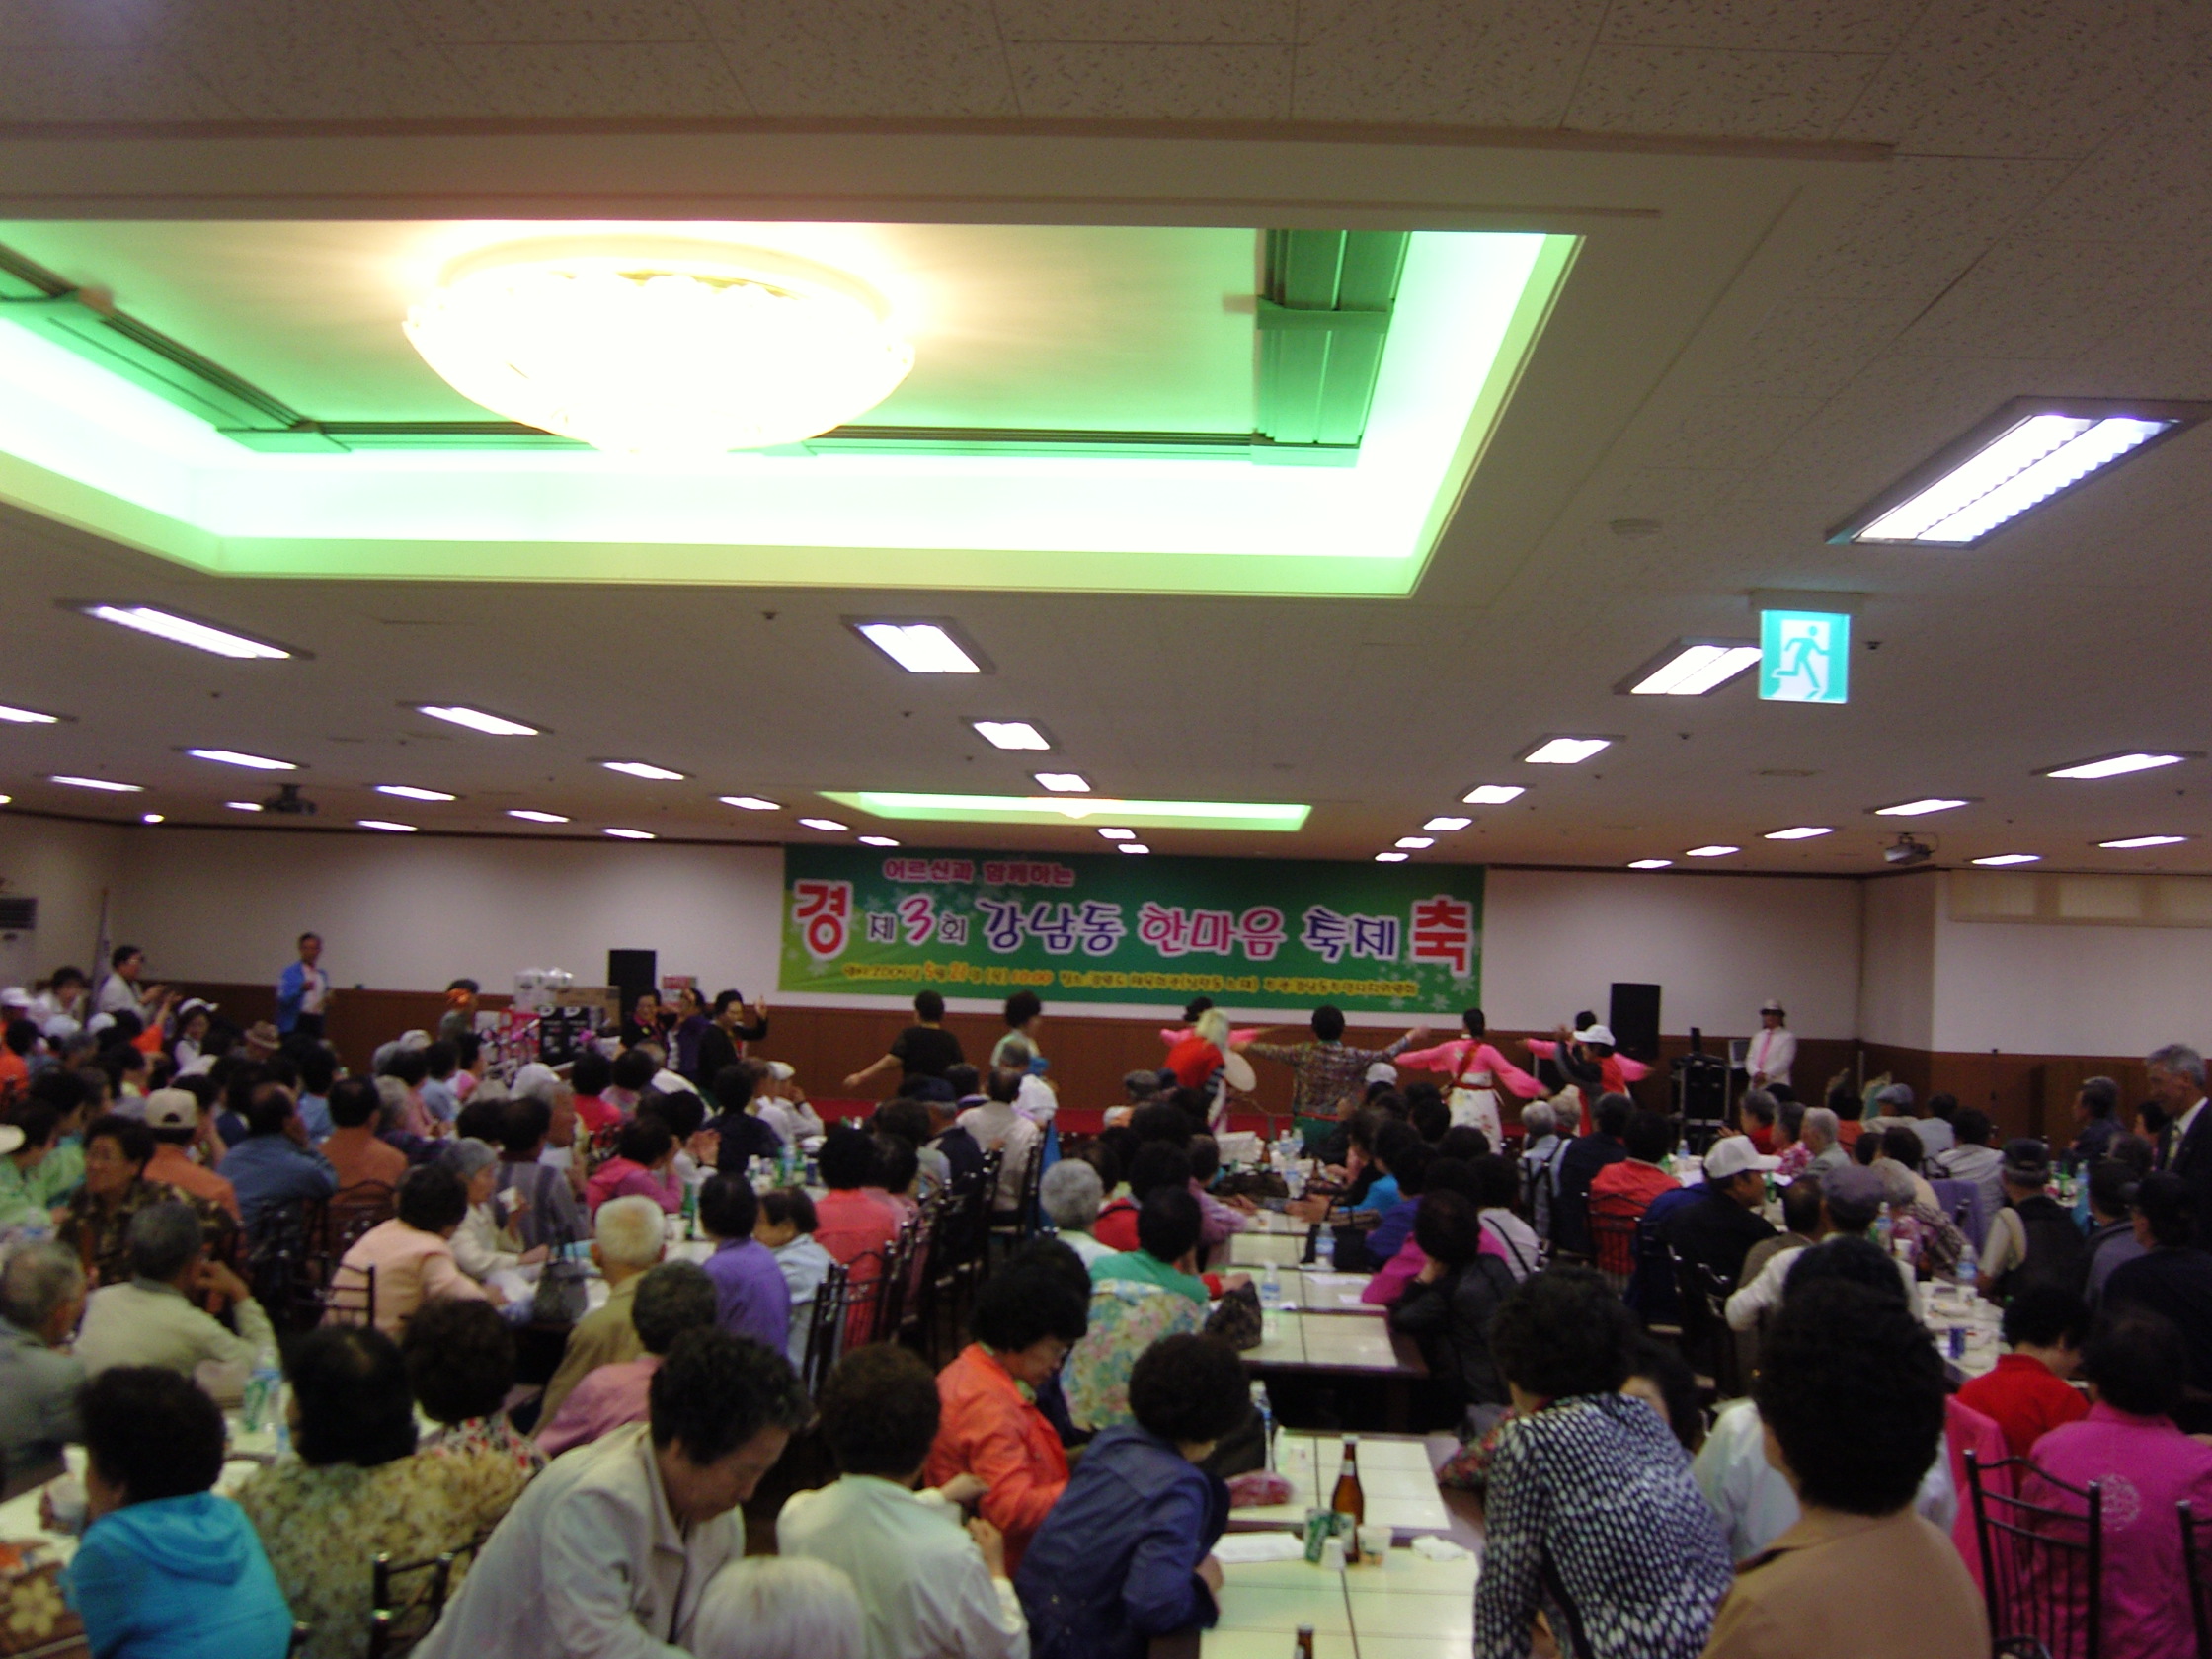 2009 강남동한마음축제